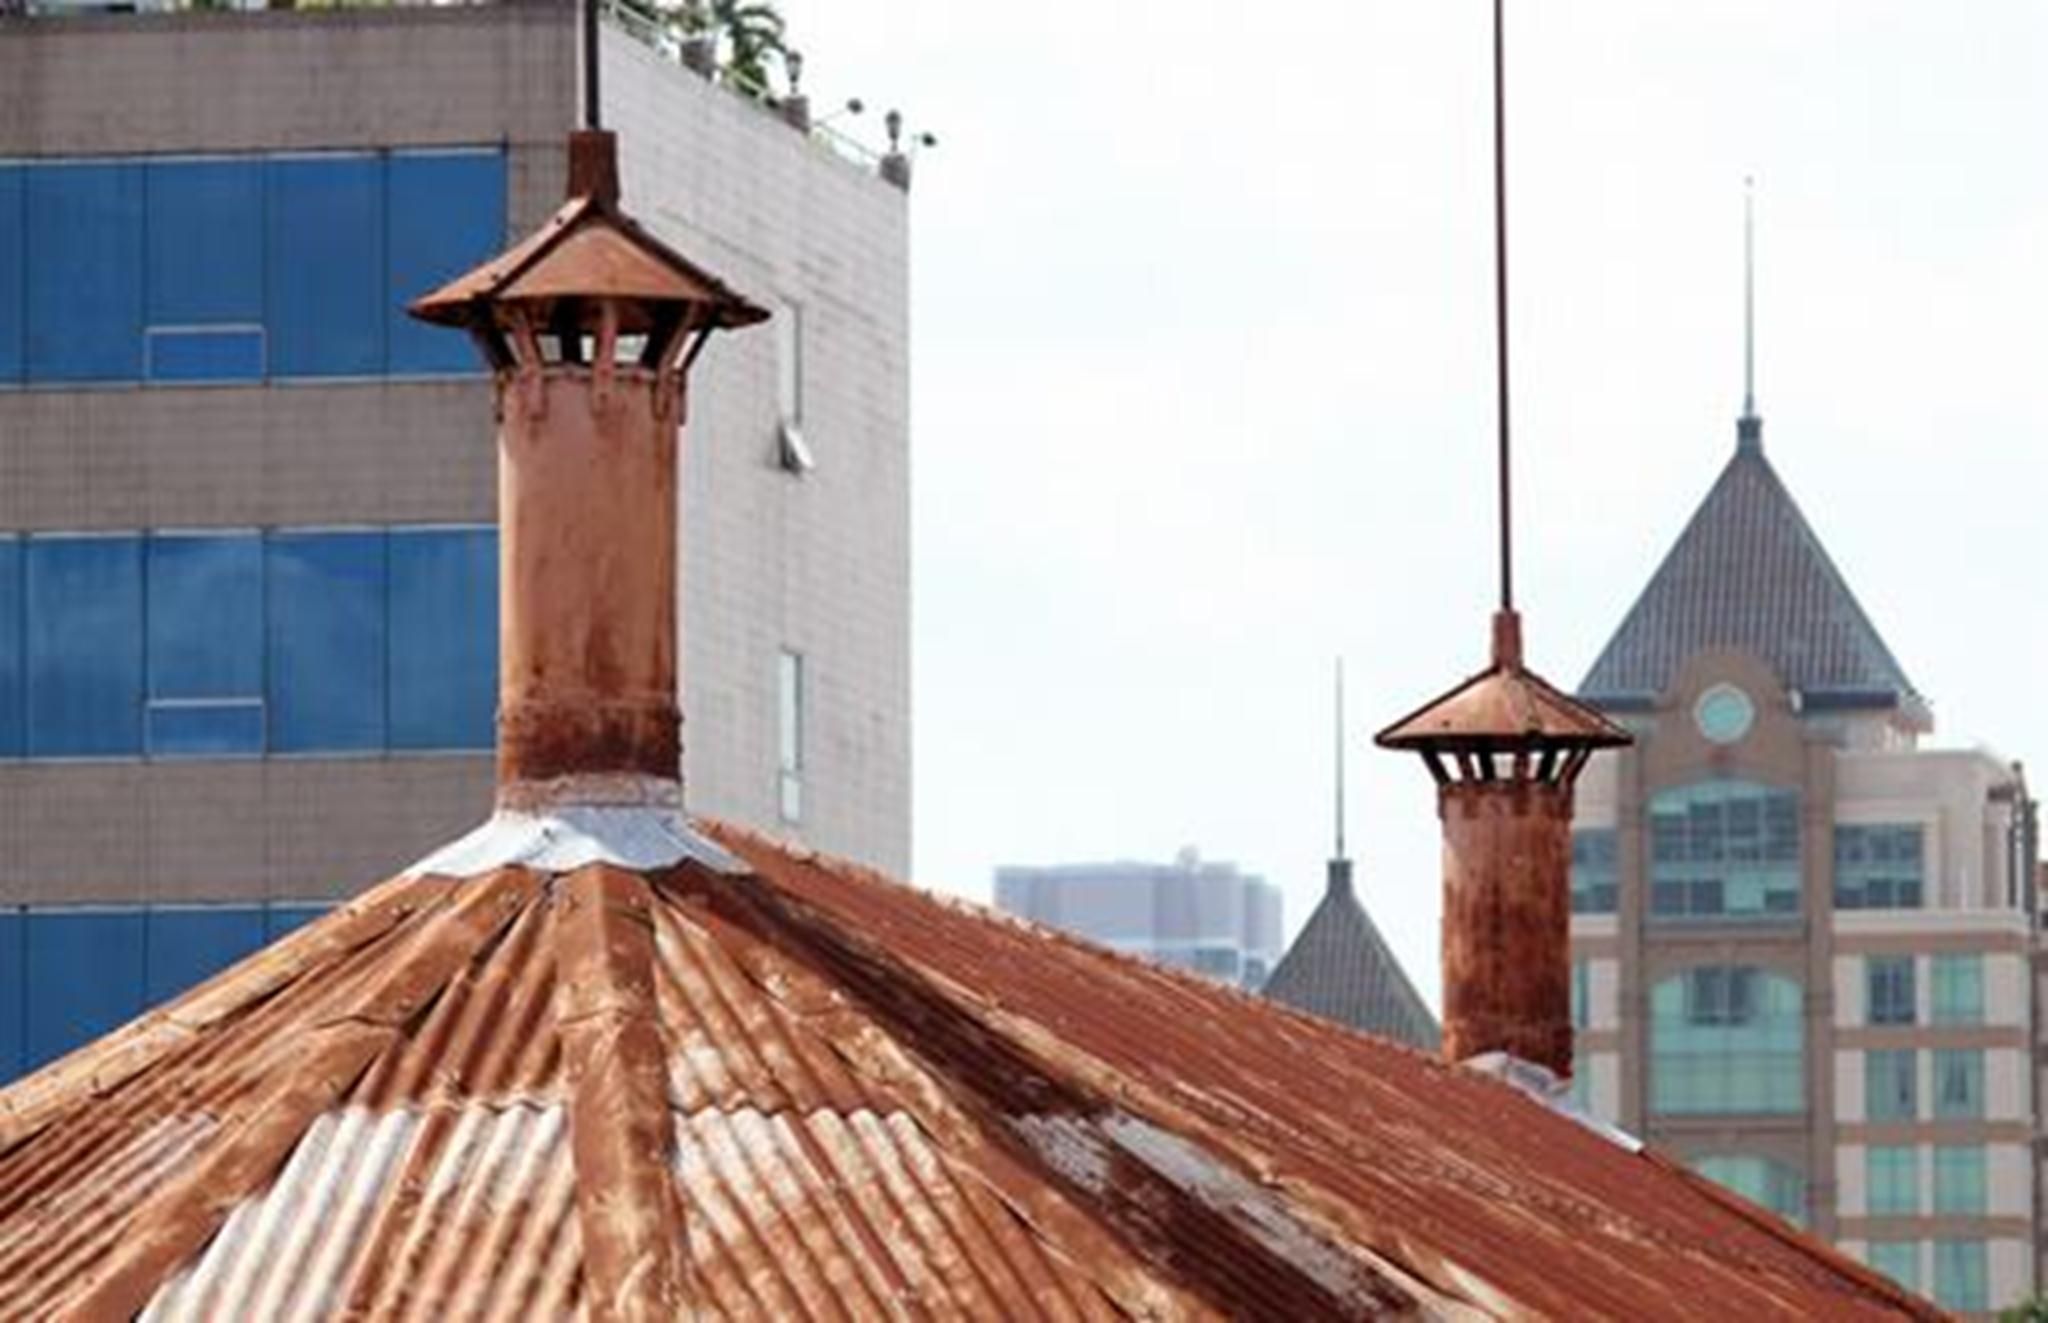 Phần nóc của tháp nước được mái tôn che mưa nắng, mỗi tháp có một ống thông gió.